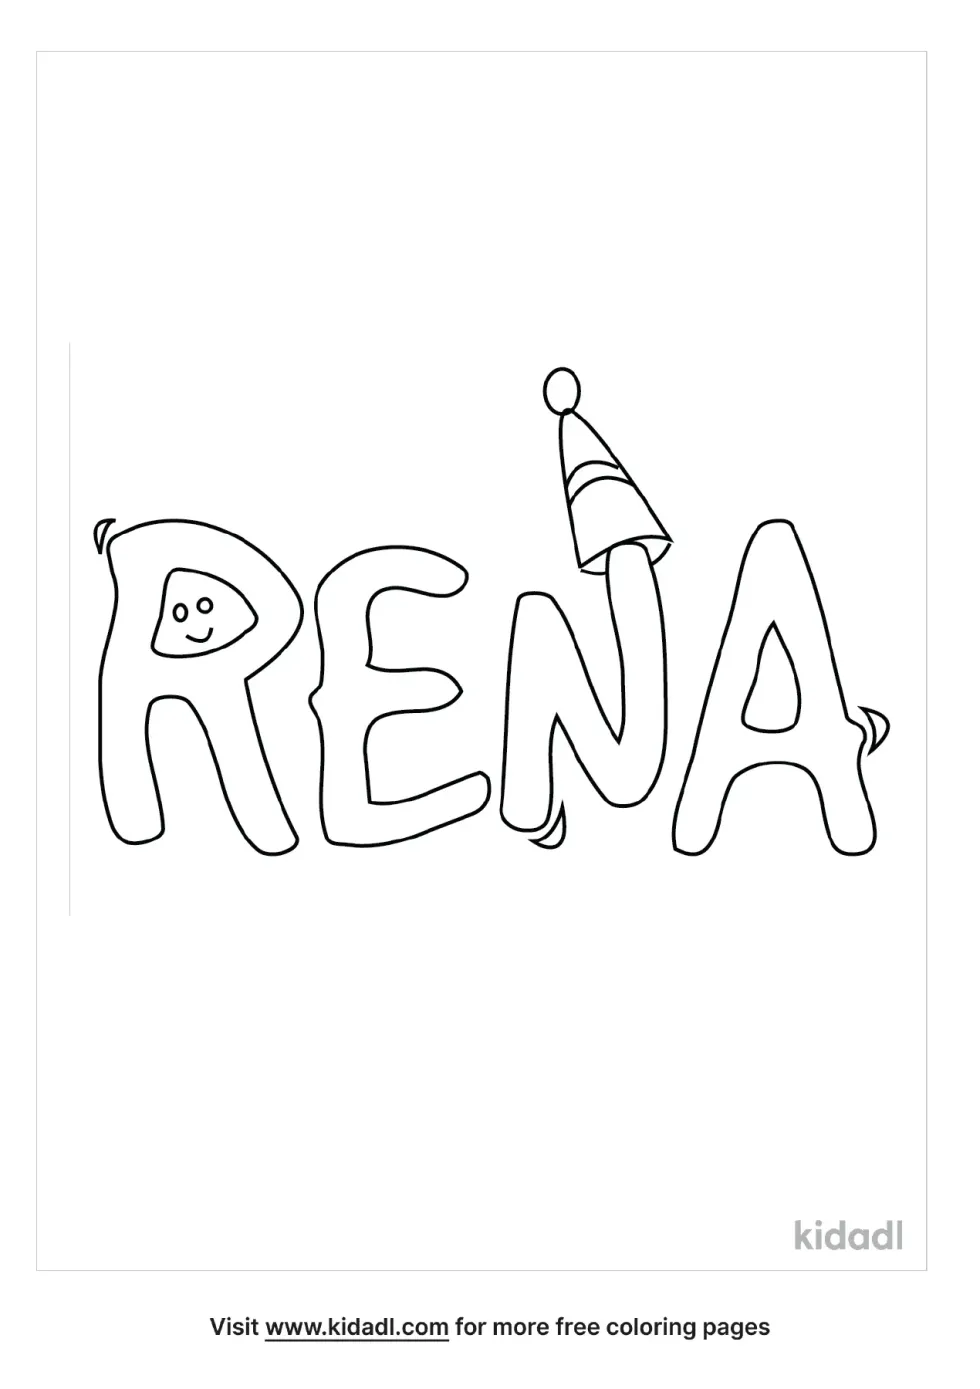 Rena Name